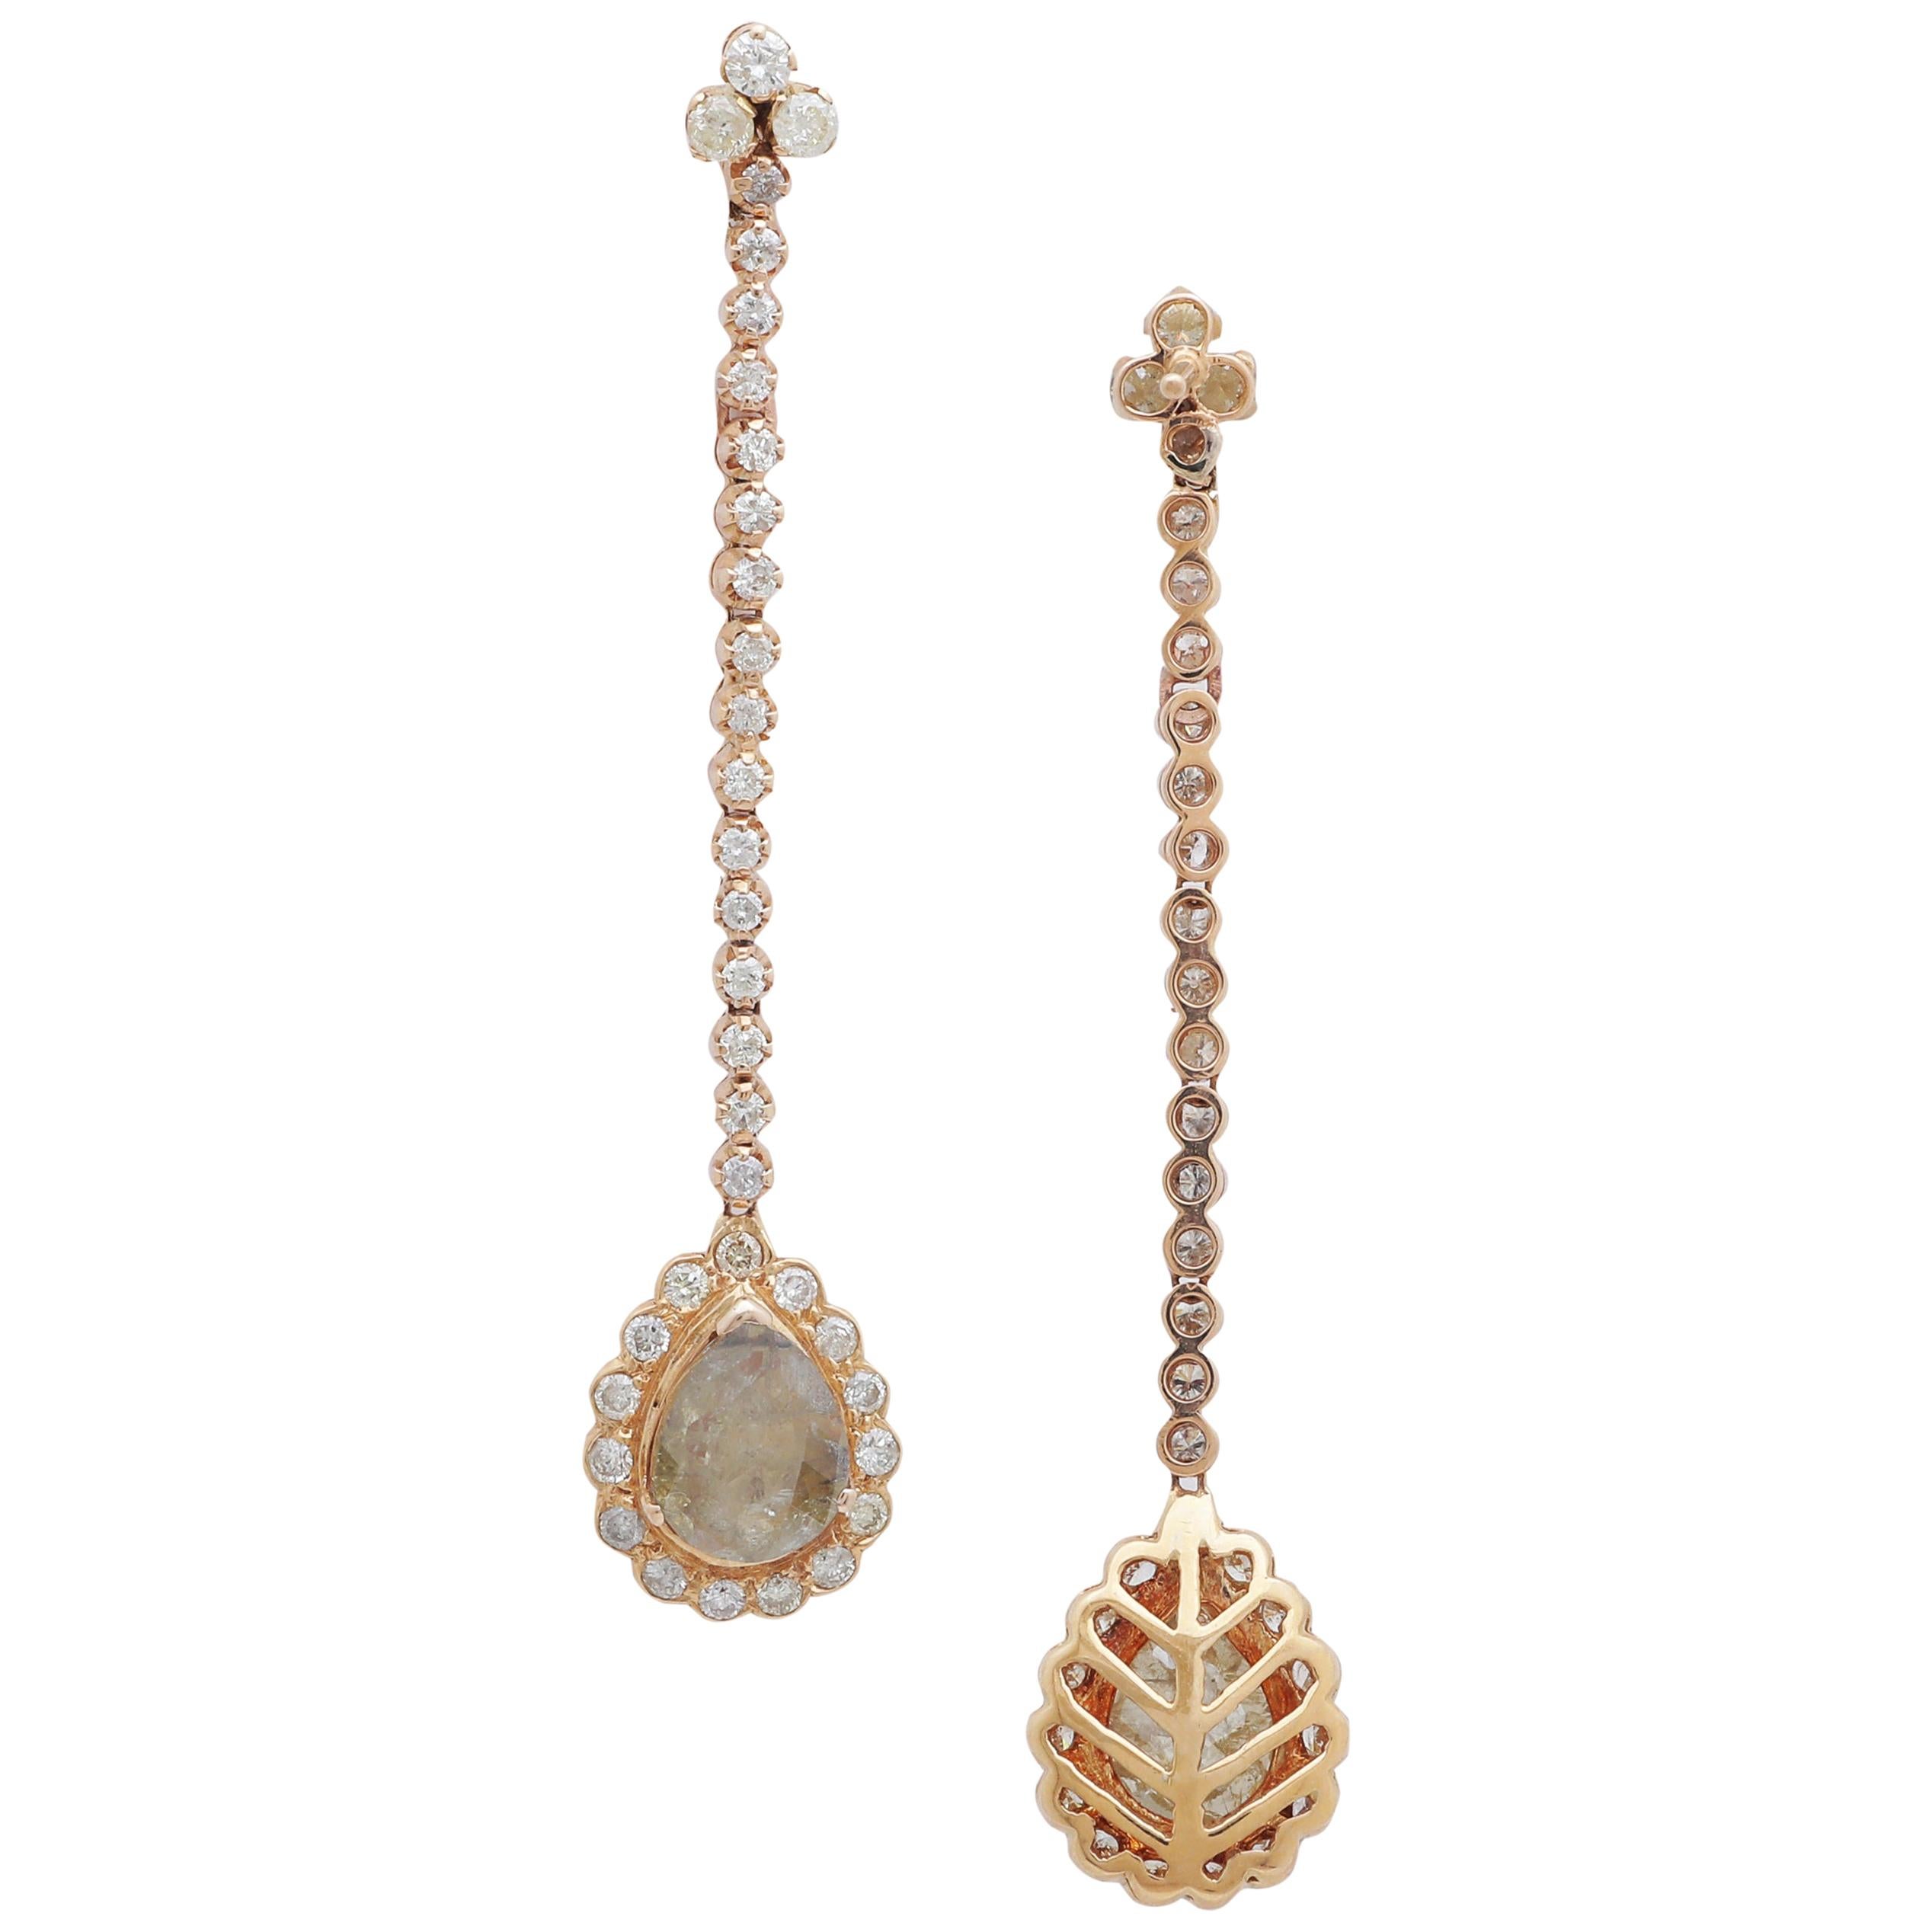 Dangling Diamond Pear Shape Earring Set in 18 Karat Yellow Gold For Sale